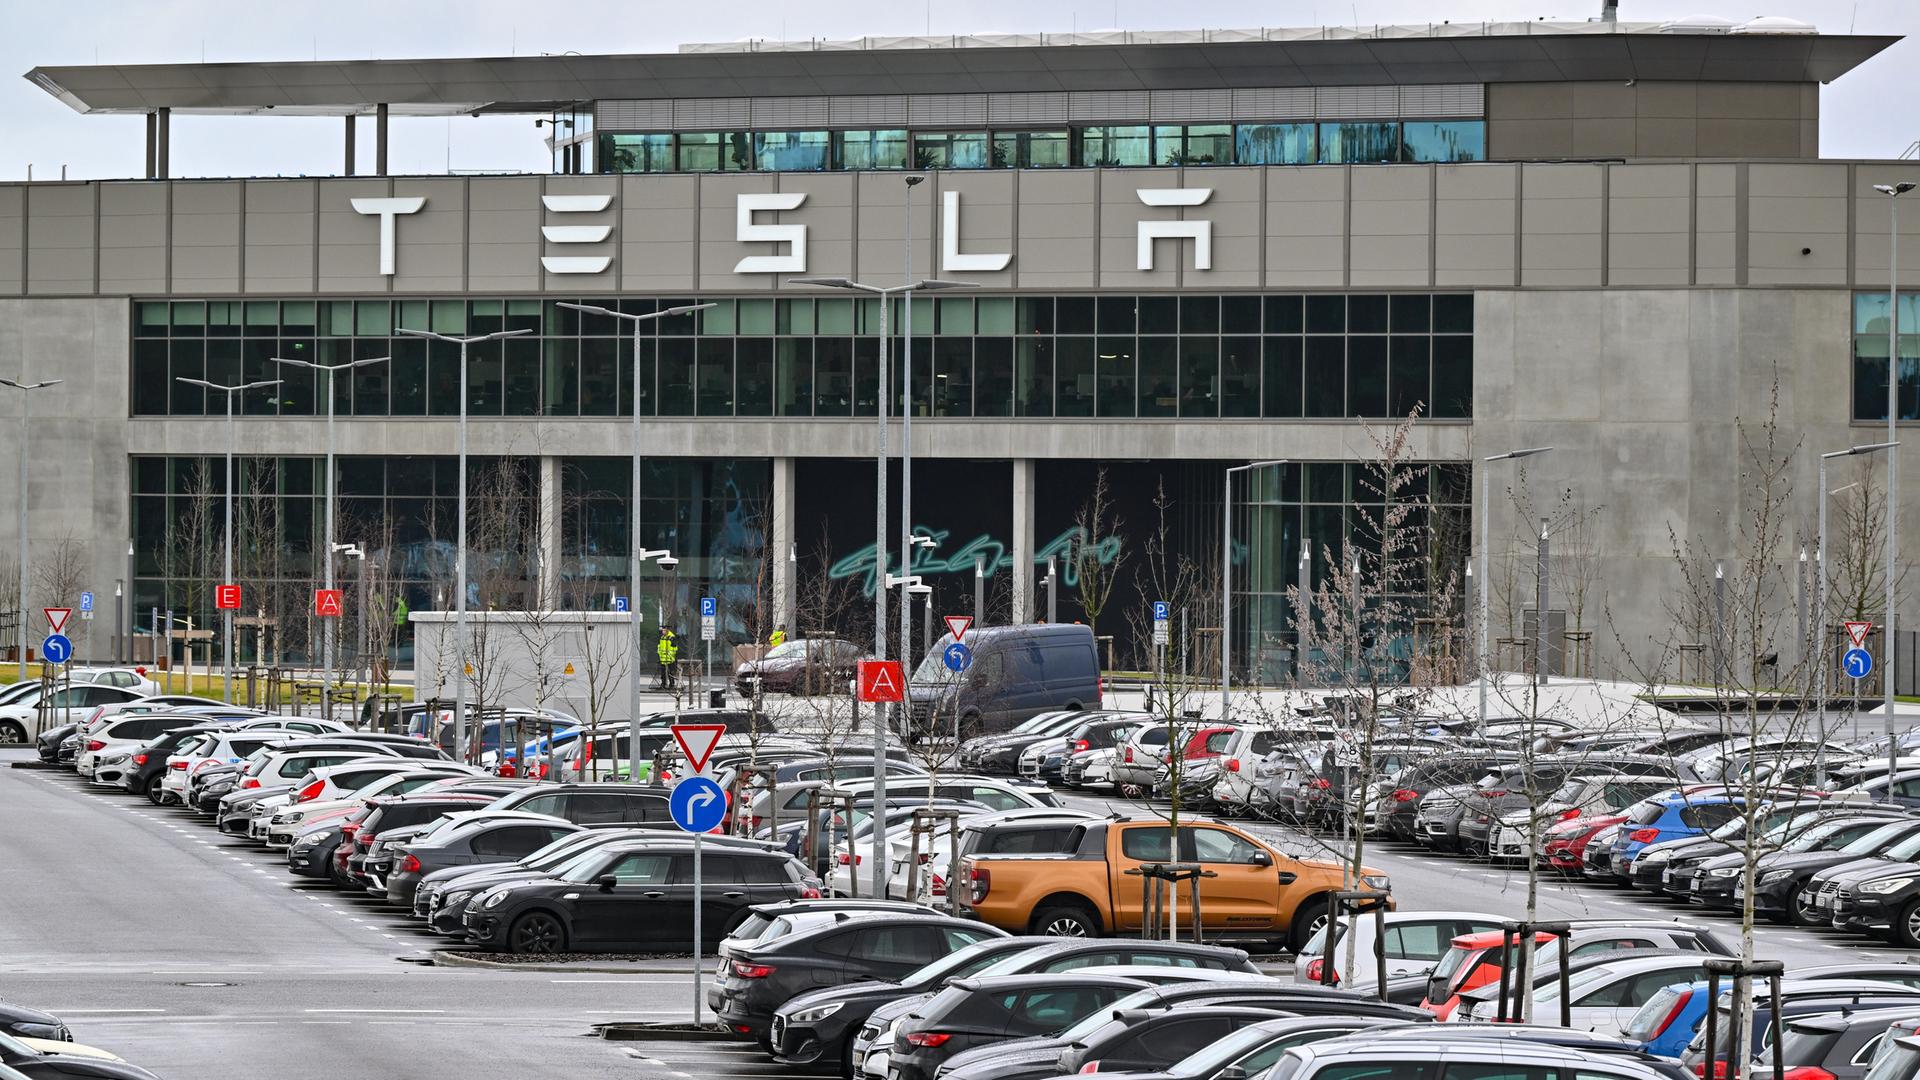 Vor dem Industriegebäude mit dem Schriftzug "Tesla" stehen zahlreiche Fahrzeuge auf einem Parkplatz.